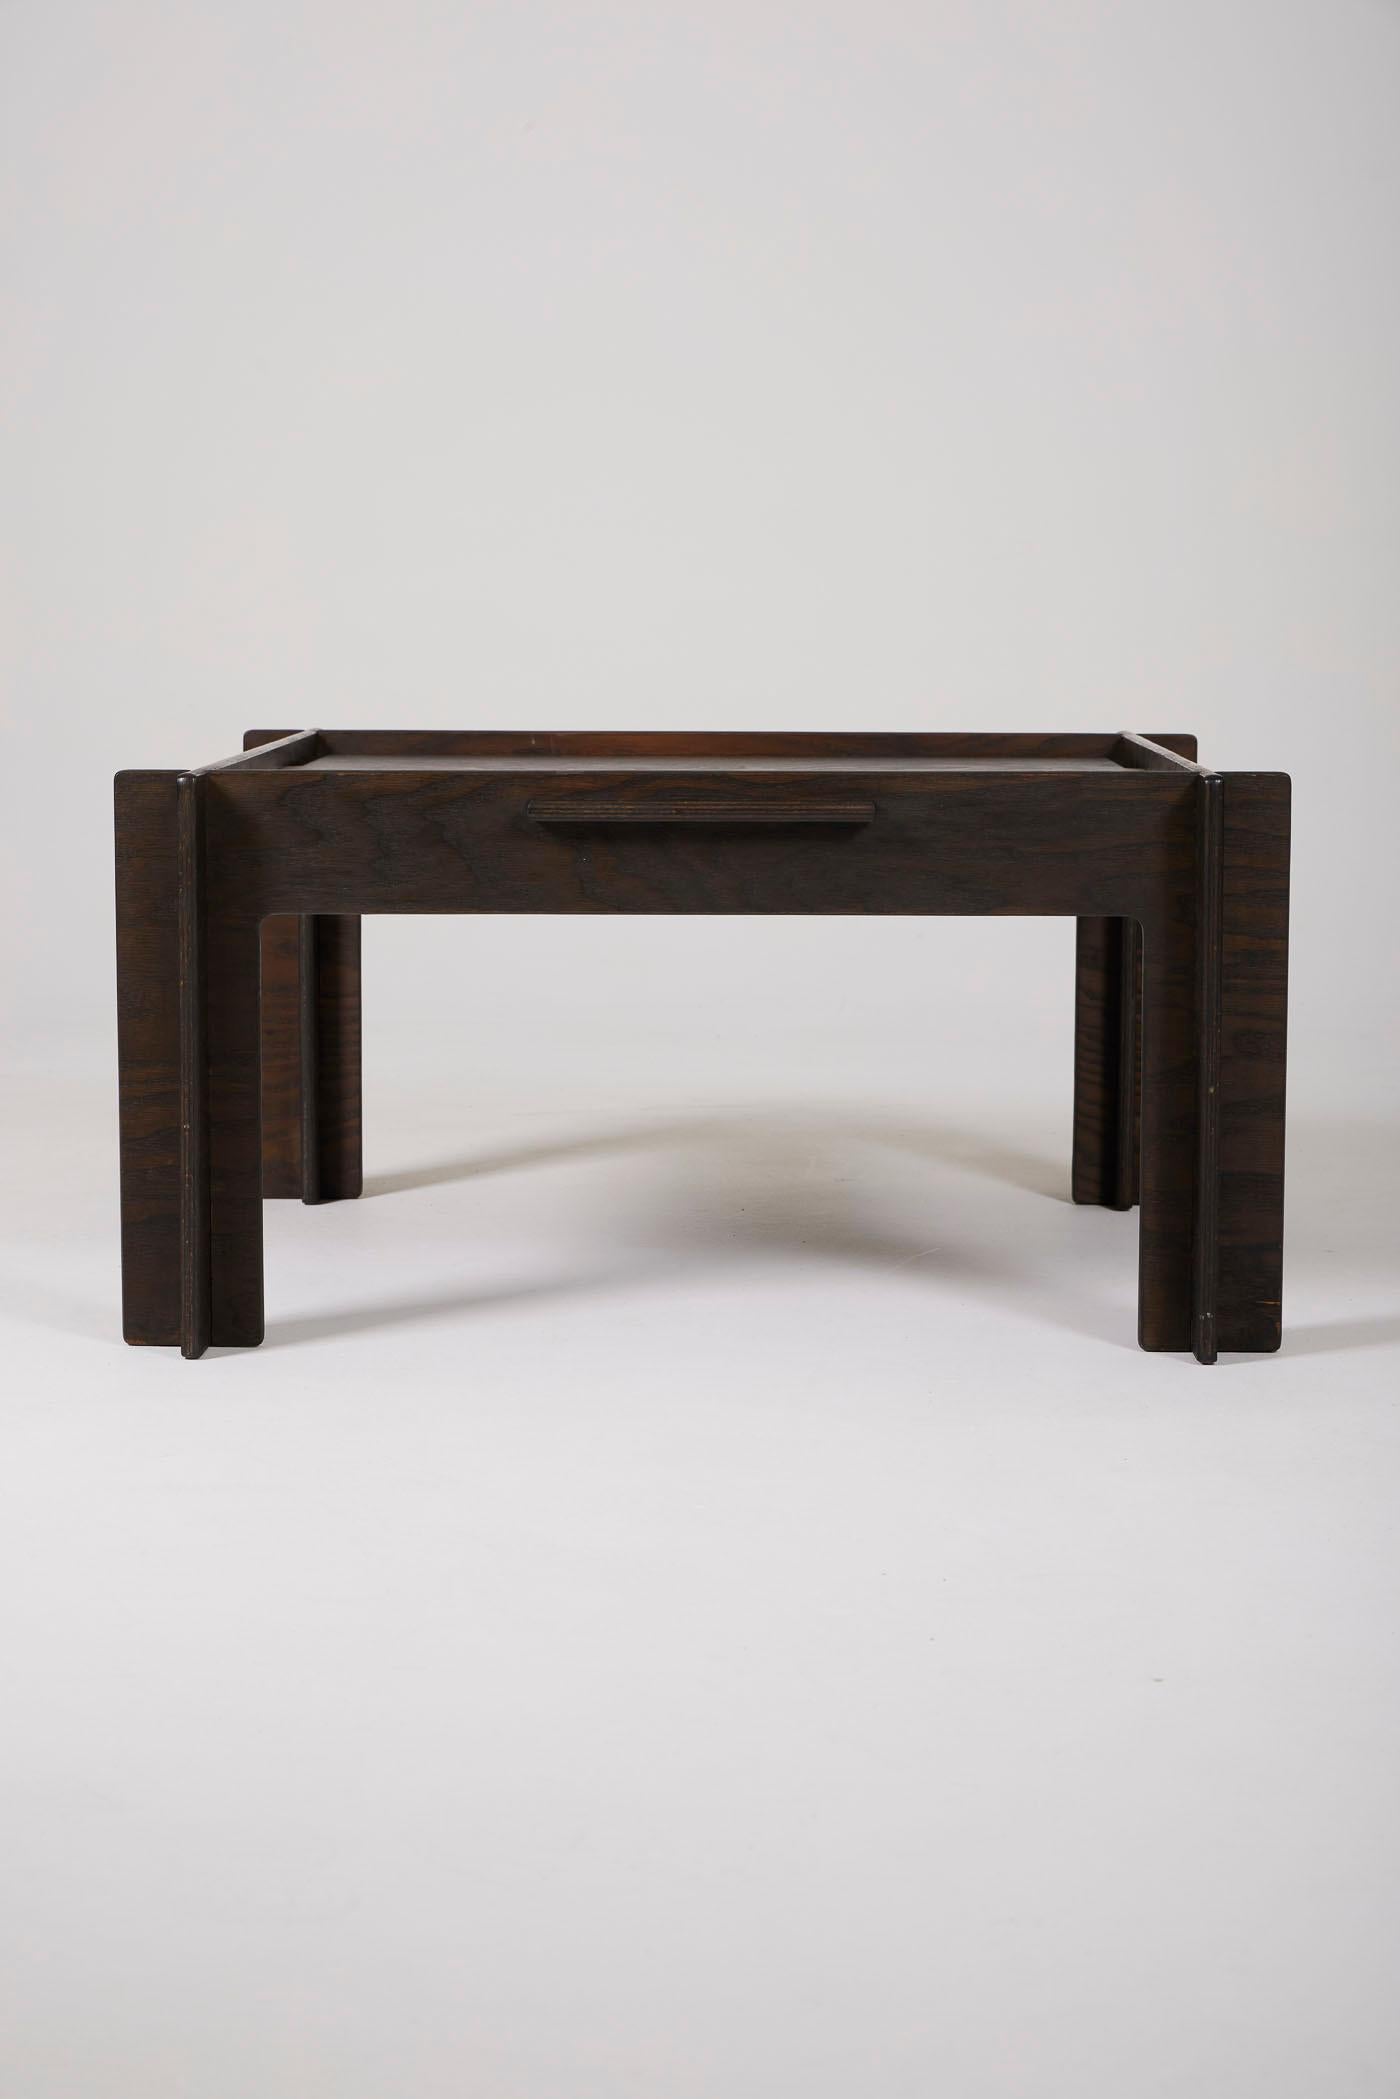 Arne Jacobsen coffee table 1